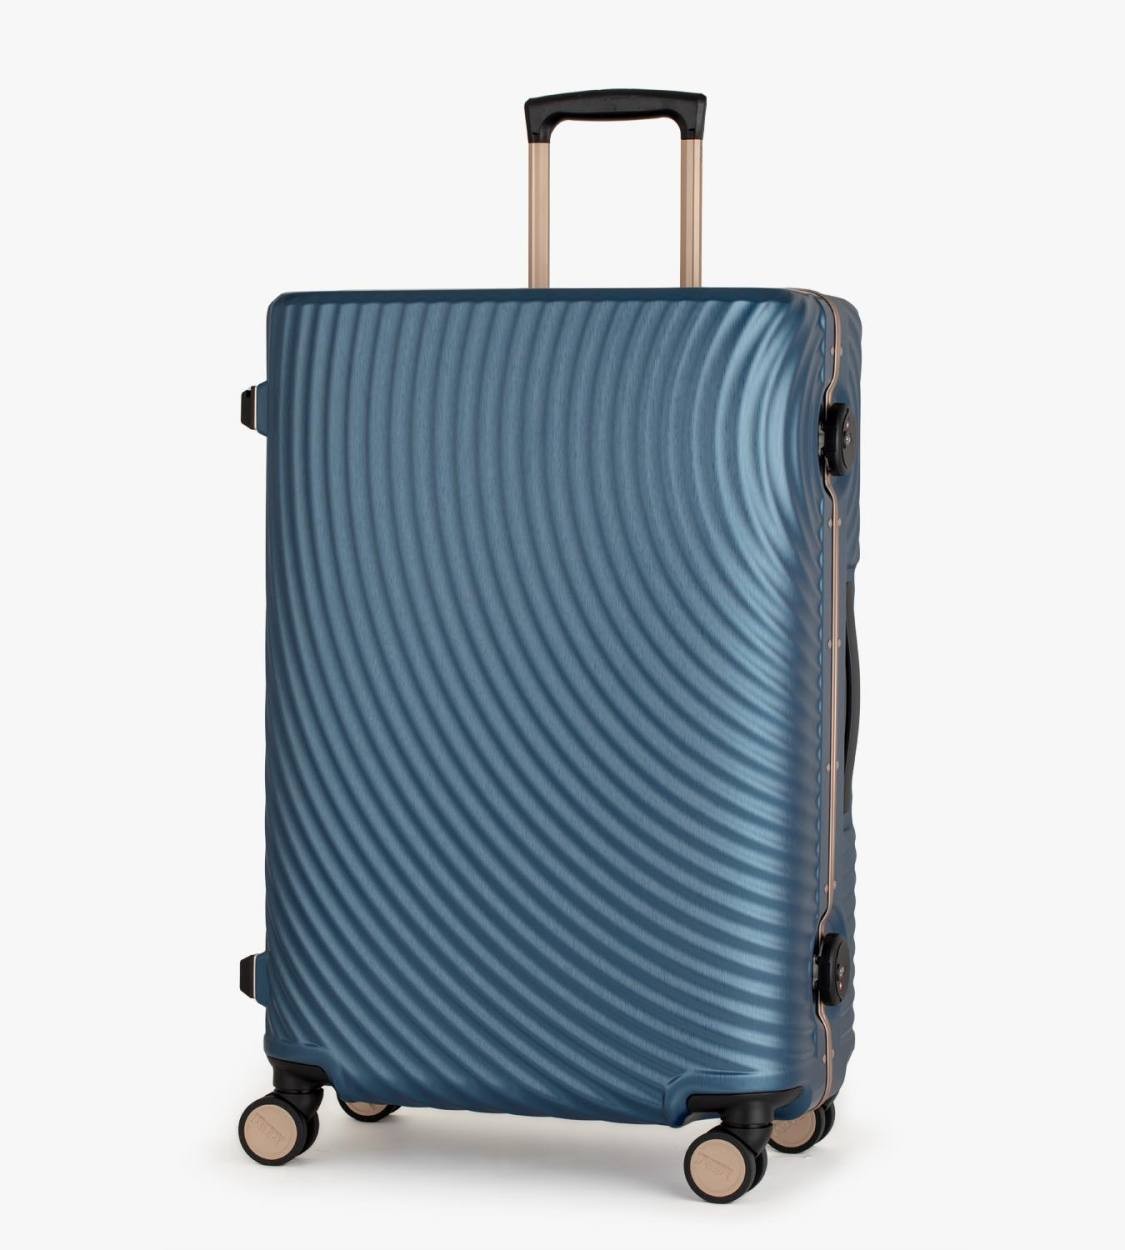 限定版 スーツケース トランク型キャリーケース Mサイズ 軽量 TSAロック ネイビー - 旅行用バッグ/キャリーバッグ -  www.qiraatafrican.com